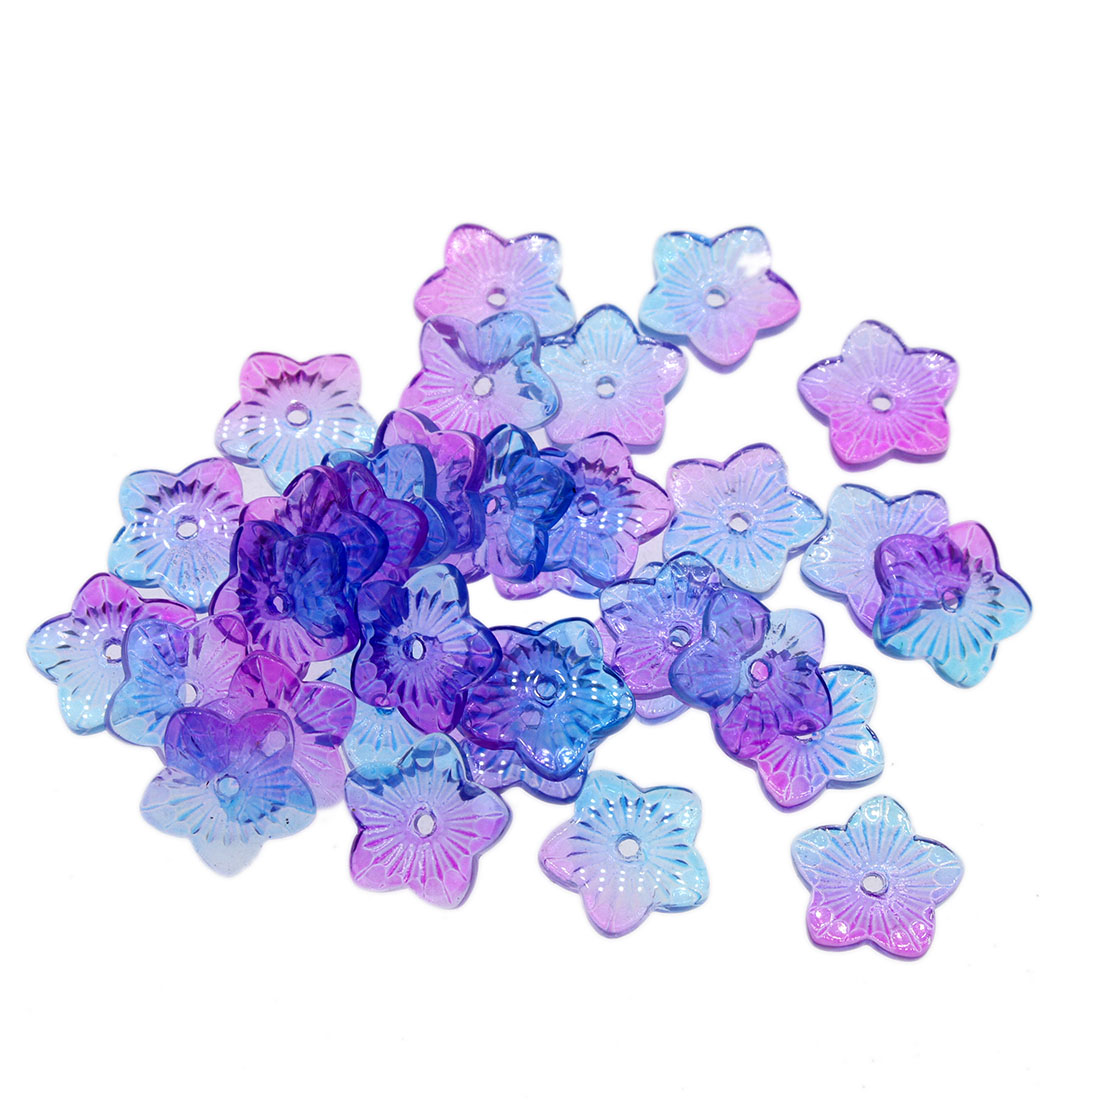 3:hyacinthine